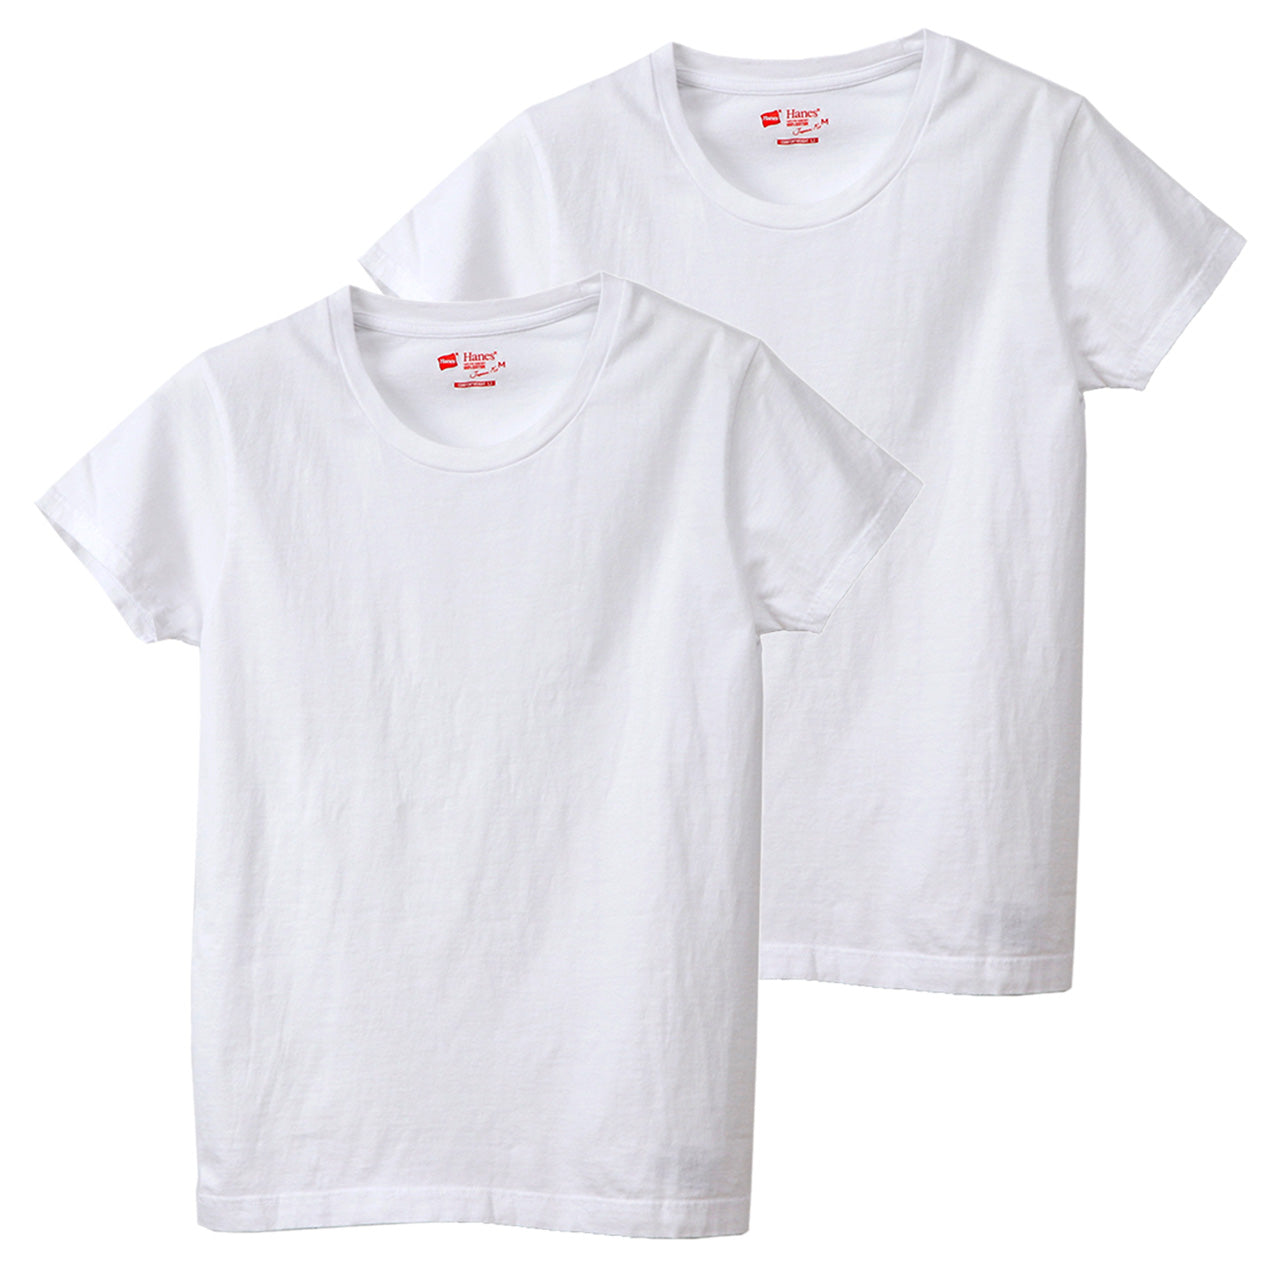 ヘインズ tシャツ レディース 半袖 綿100% ジャパンフィット 2枚組 M・L (Tシャツ 綿 無地 インナー シャツ クルーネック)